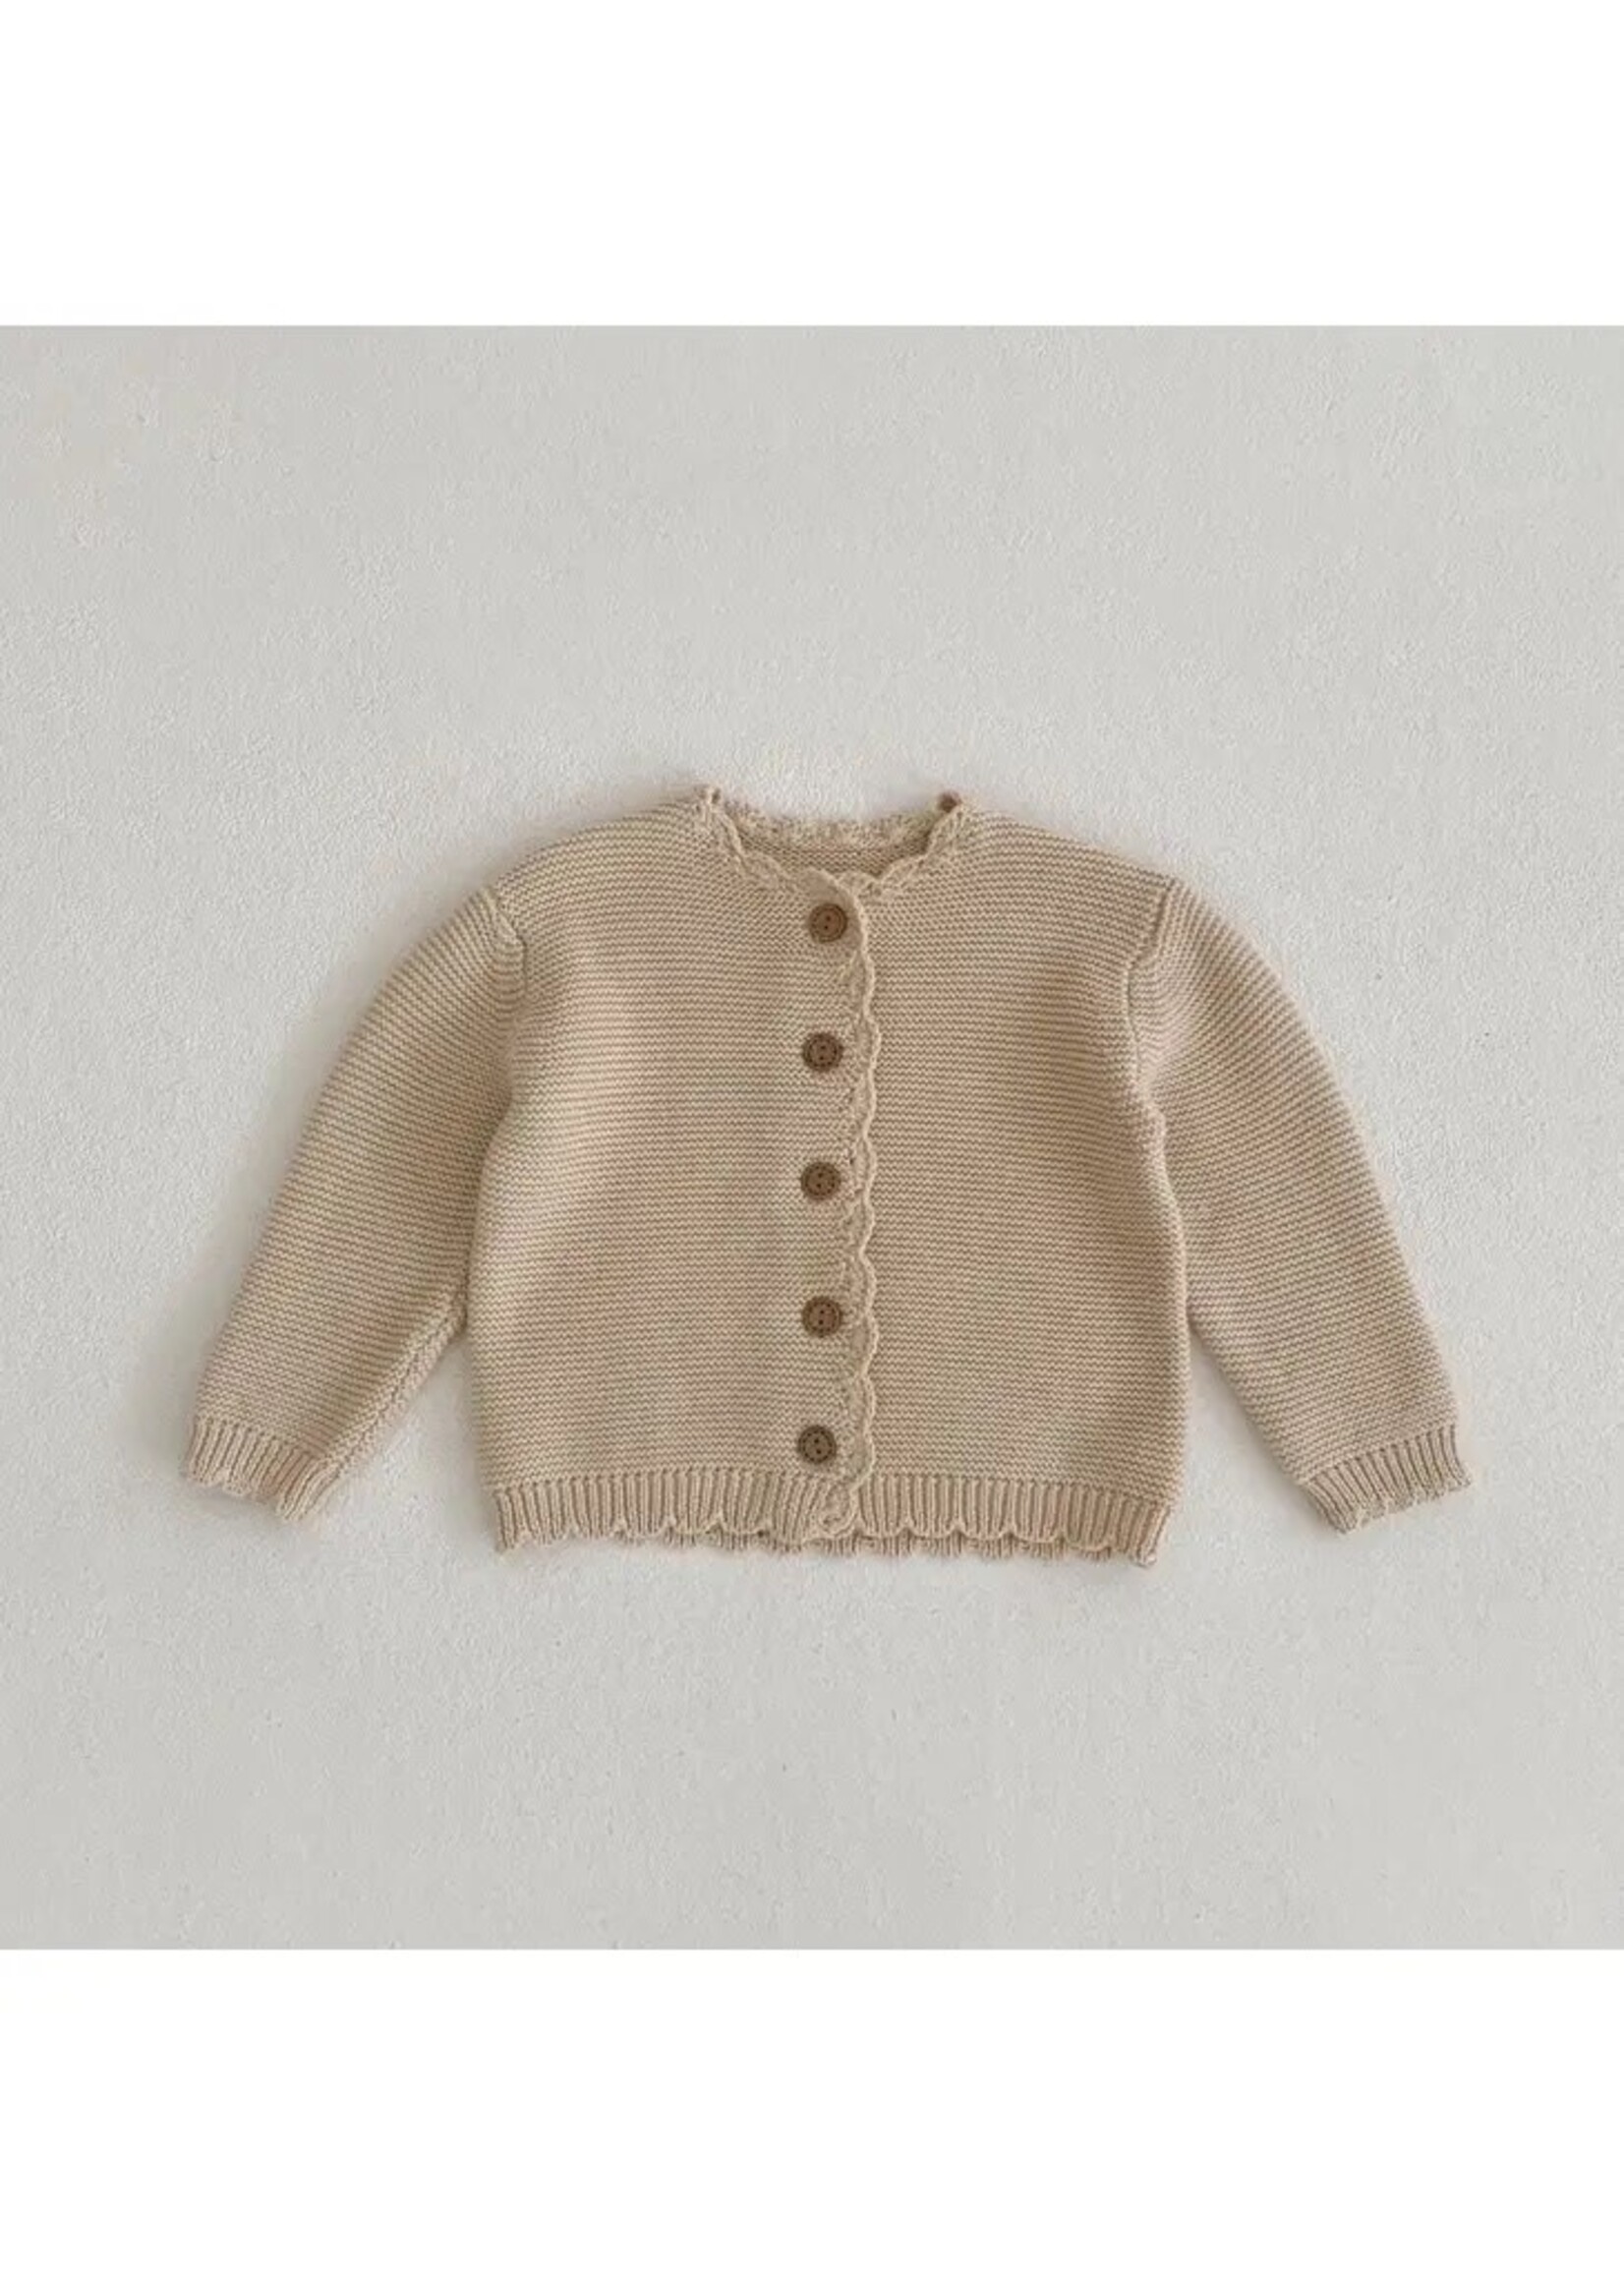 Chiara Knit Jacket - Beige